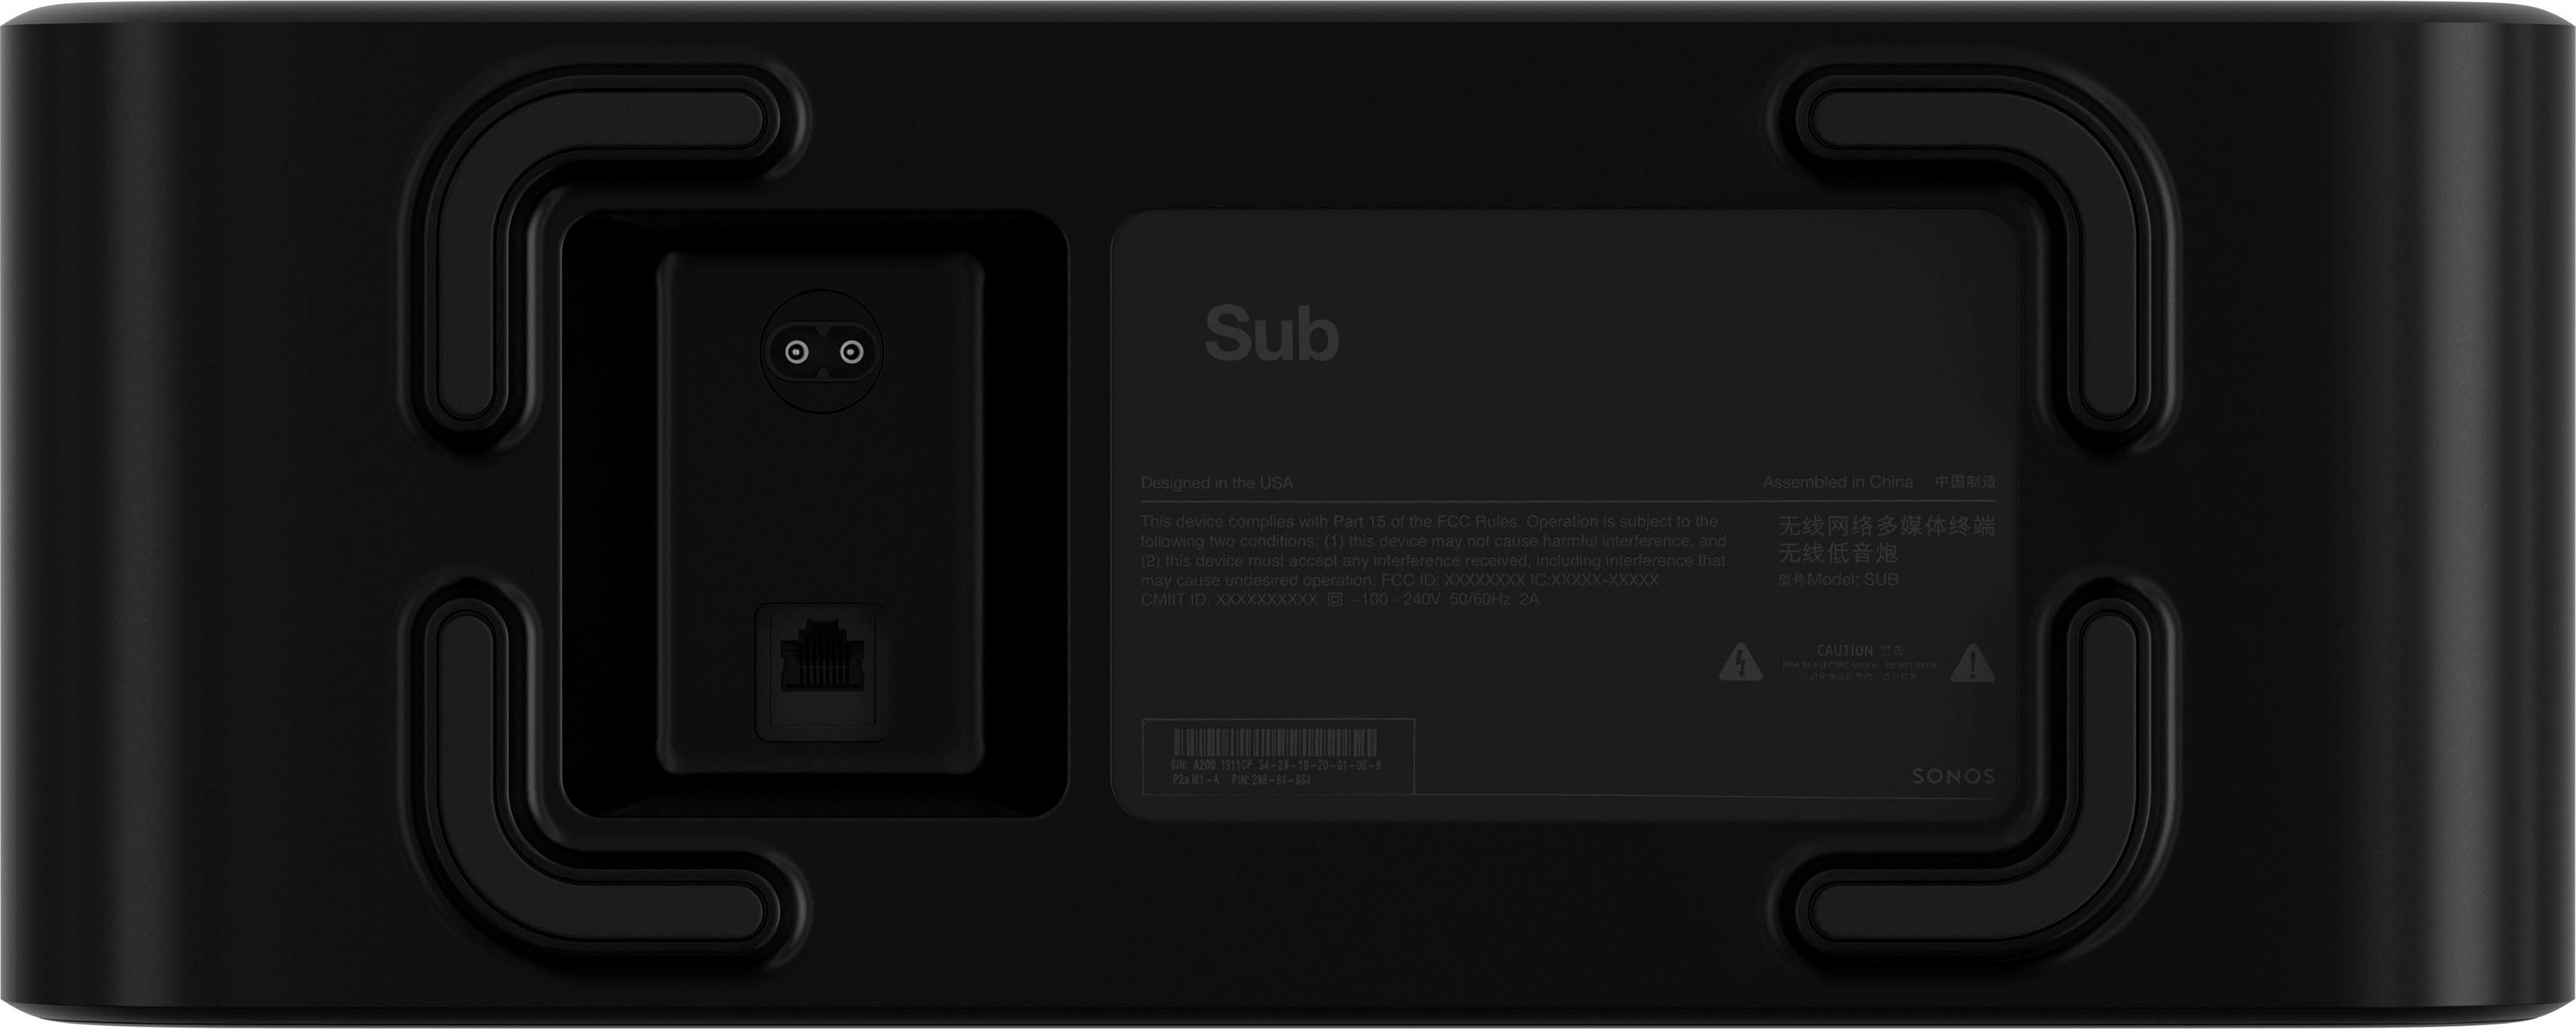 Sub (Gen3) (LAN (Ethernet), Subwoofer WLAN- WLAN) Sonos schwarz